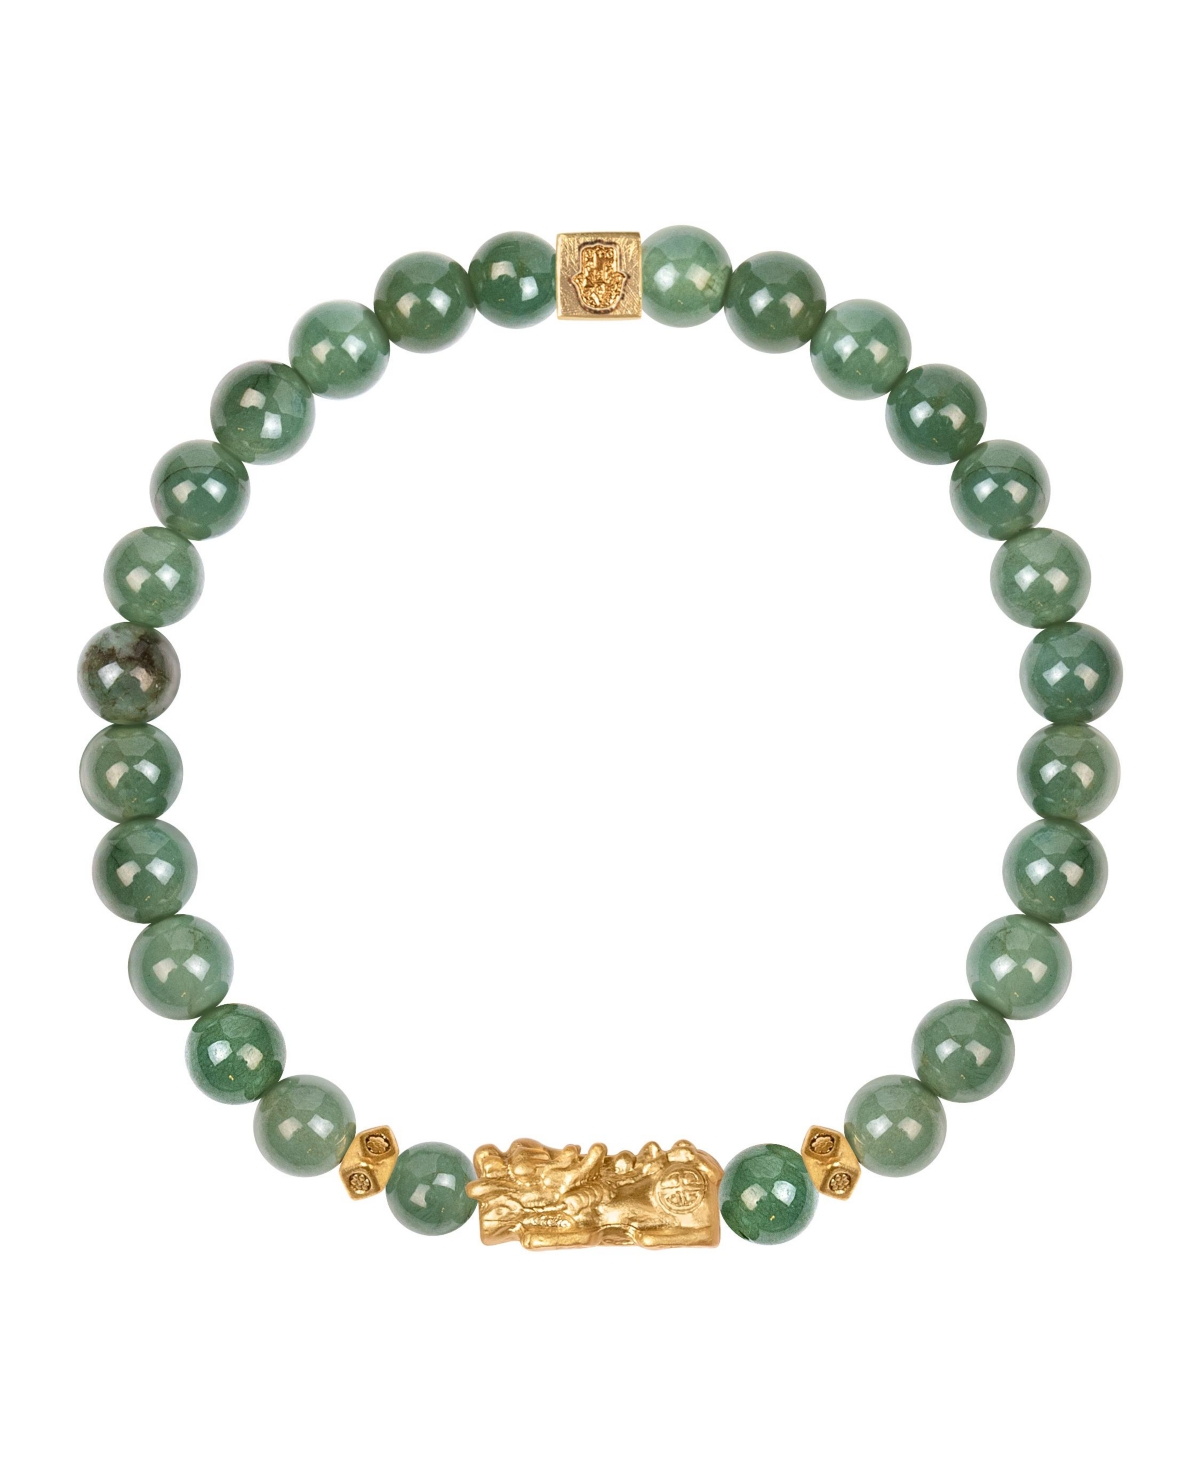 Untamed Spirit - Jade Dragon Feng Shui Bracelet - Green/gold